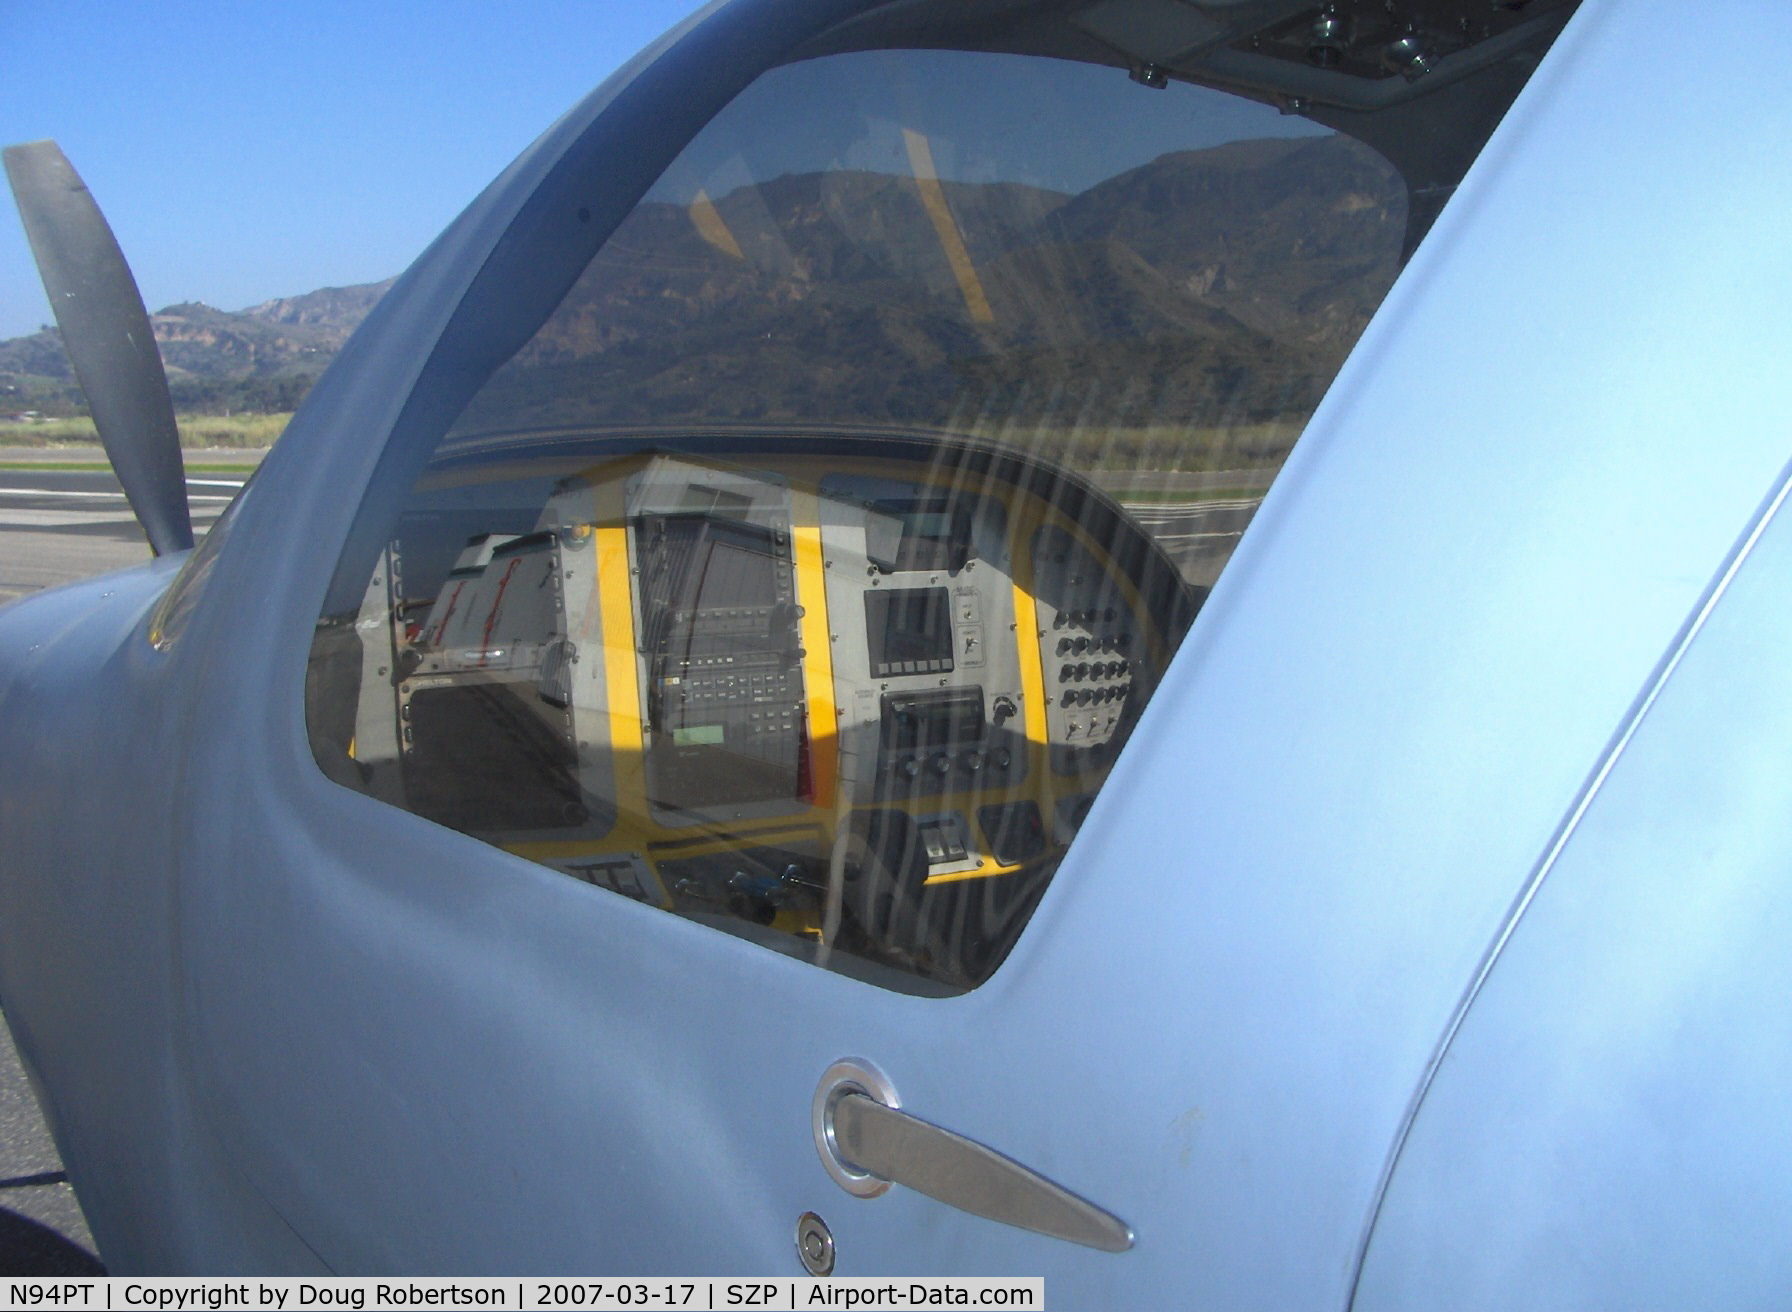 N94PT, 2006 Lancair IV C/N LIV-494, 2006 Tackabury LANCAIR IV, Continental TSIO-550 350 Hp, all glass panel